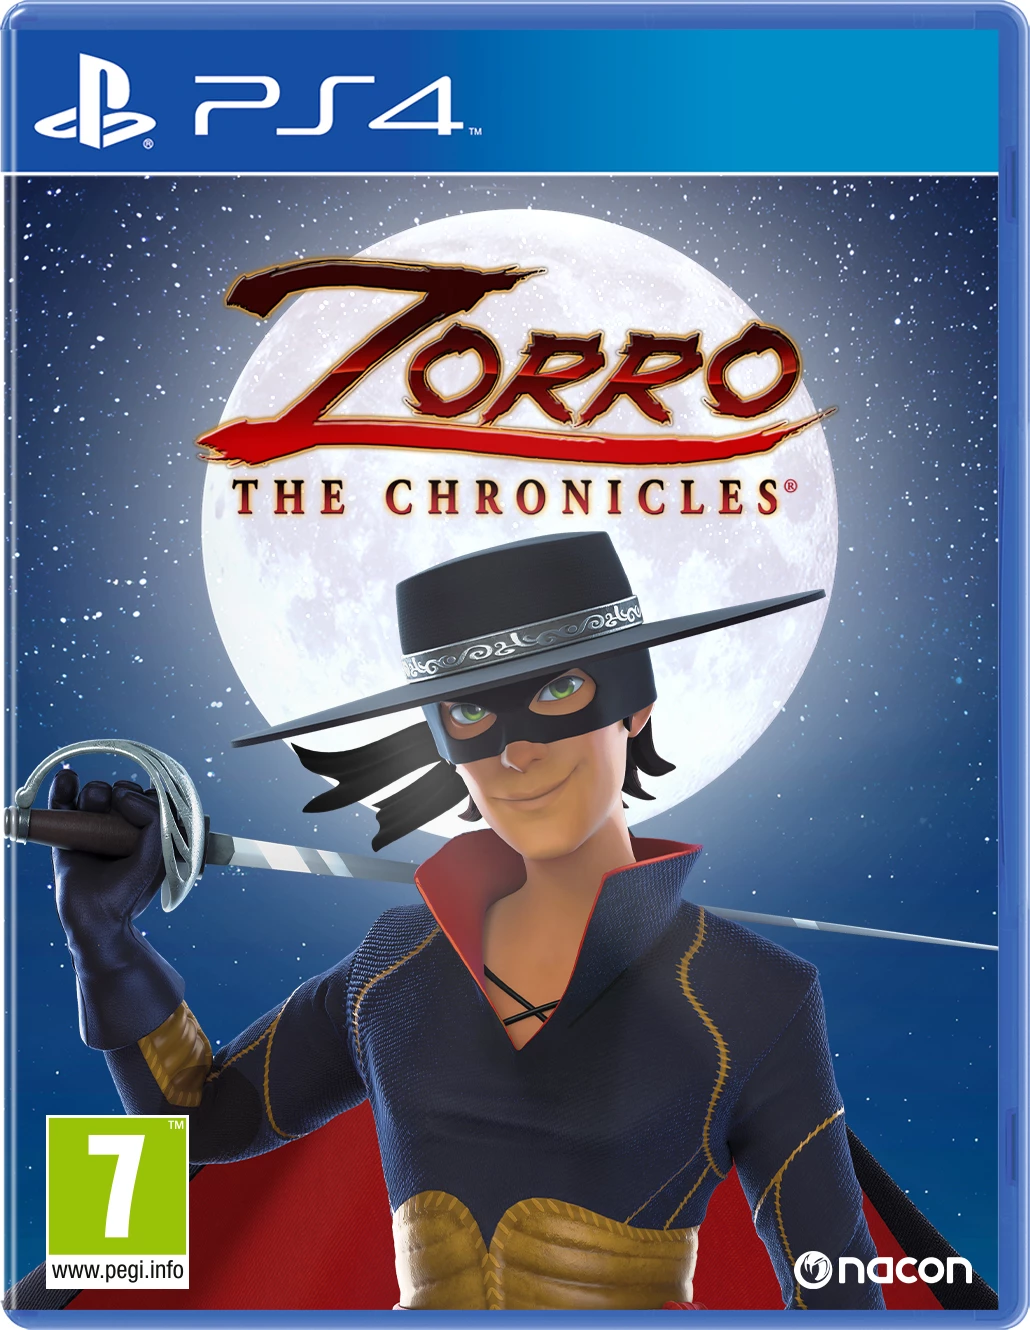 Zorro the Chronicles (PS4), Nacon